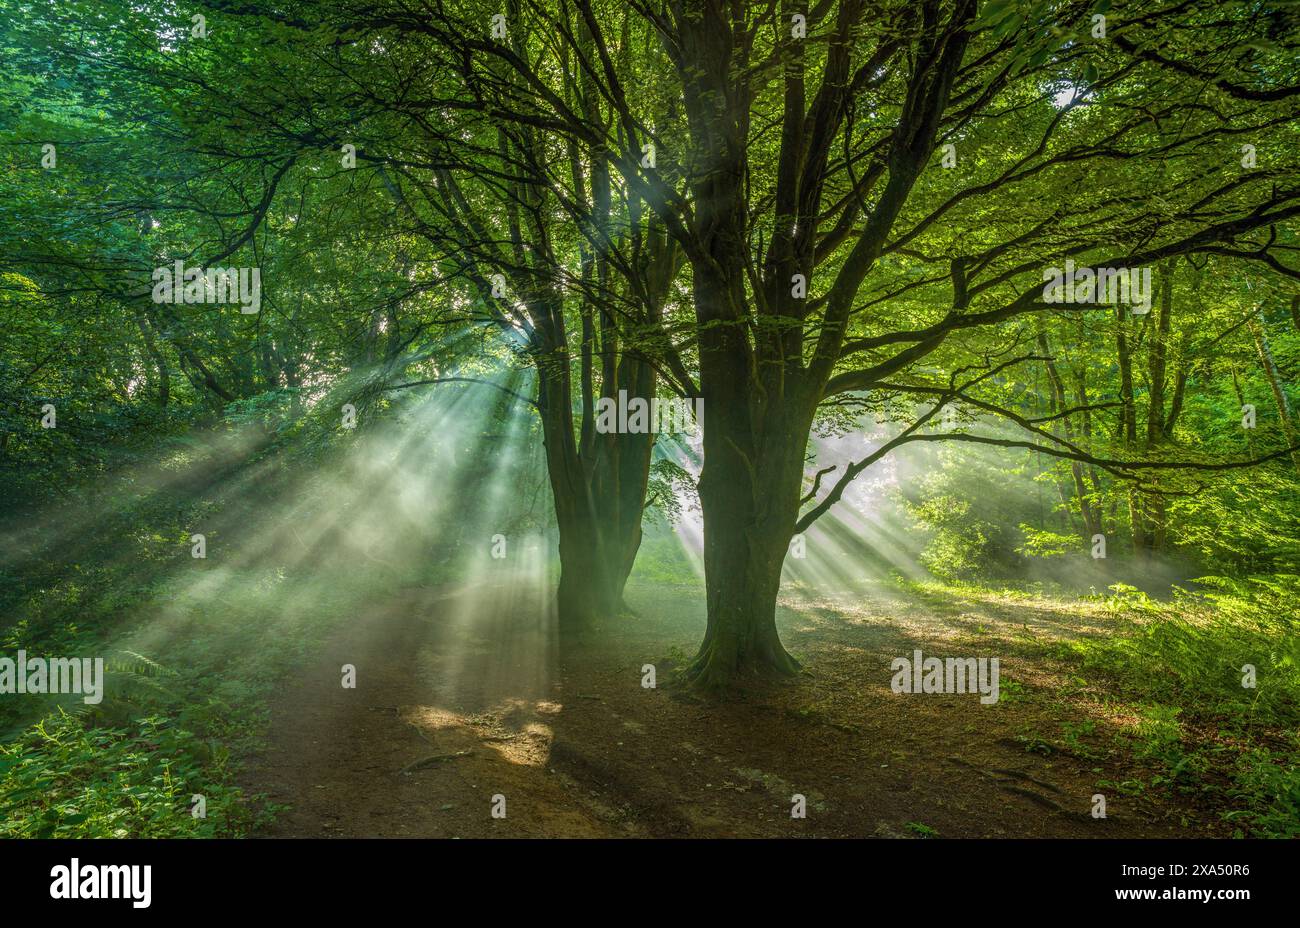 Sonnenstrahlen durchdringen das grüne Baldachin eines mystischen Waldweges. Stockfoto